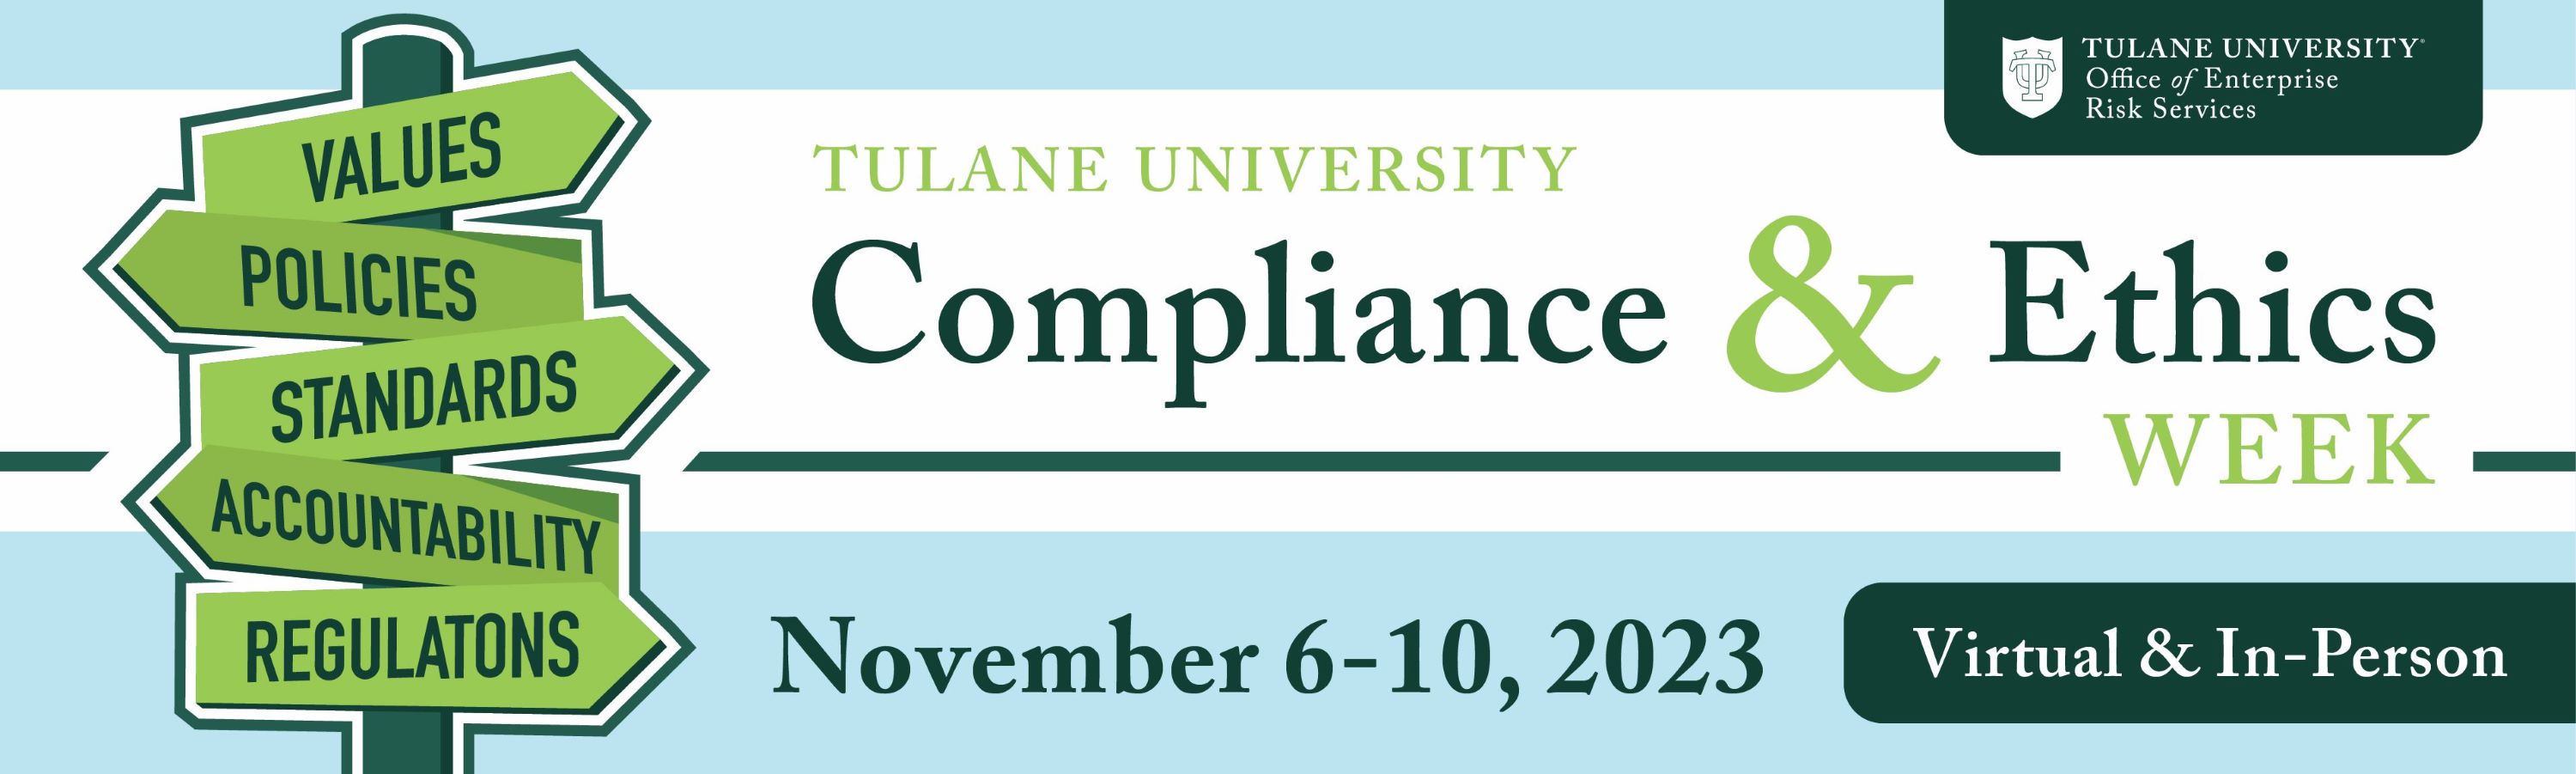 Compliance & Ethics Week banner